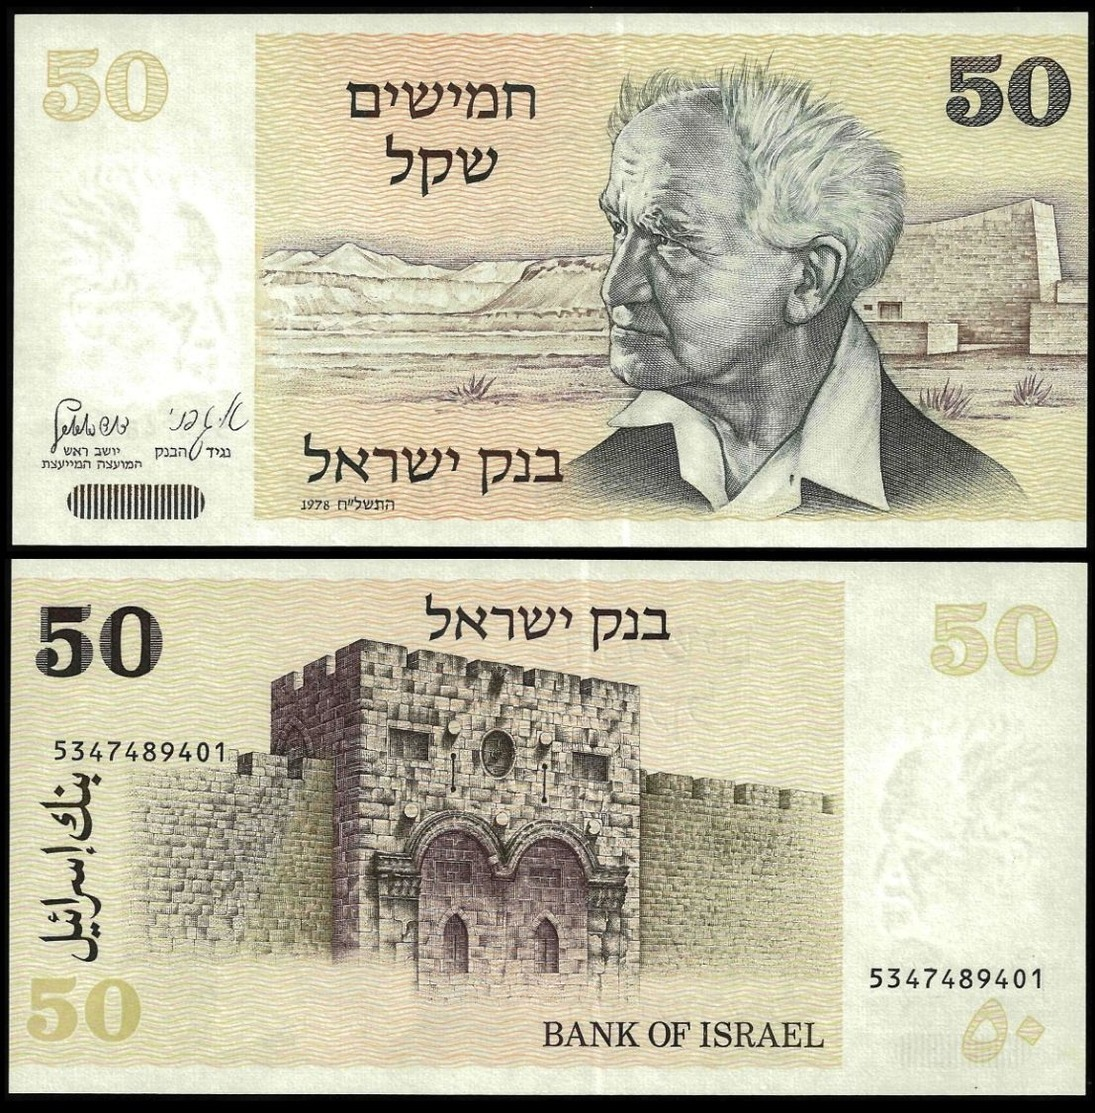 Israel 50 SHEQALIM 1978 P 46 UNC - Israel